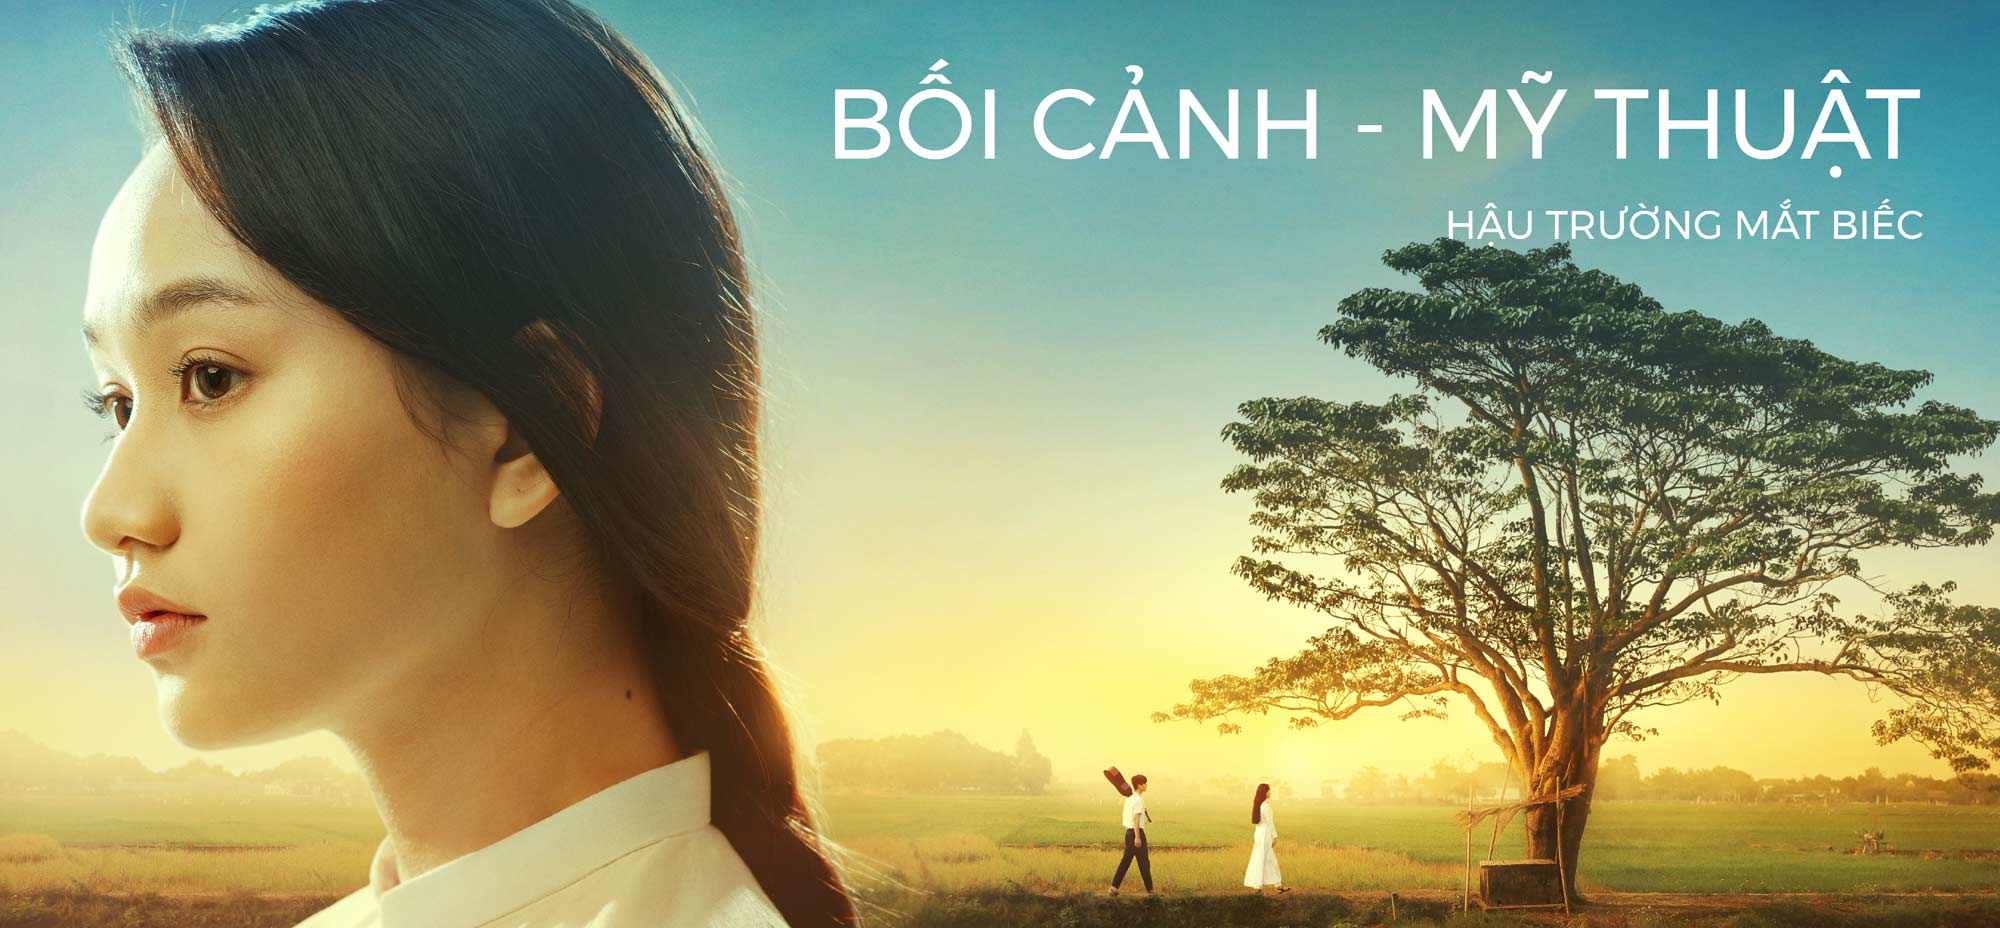 Sự thật phía sau cảnh phim về cô gái có đôi mắt đẹp nhất màn ảnh Việt - 1